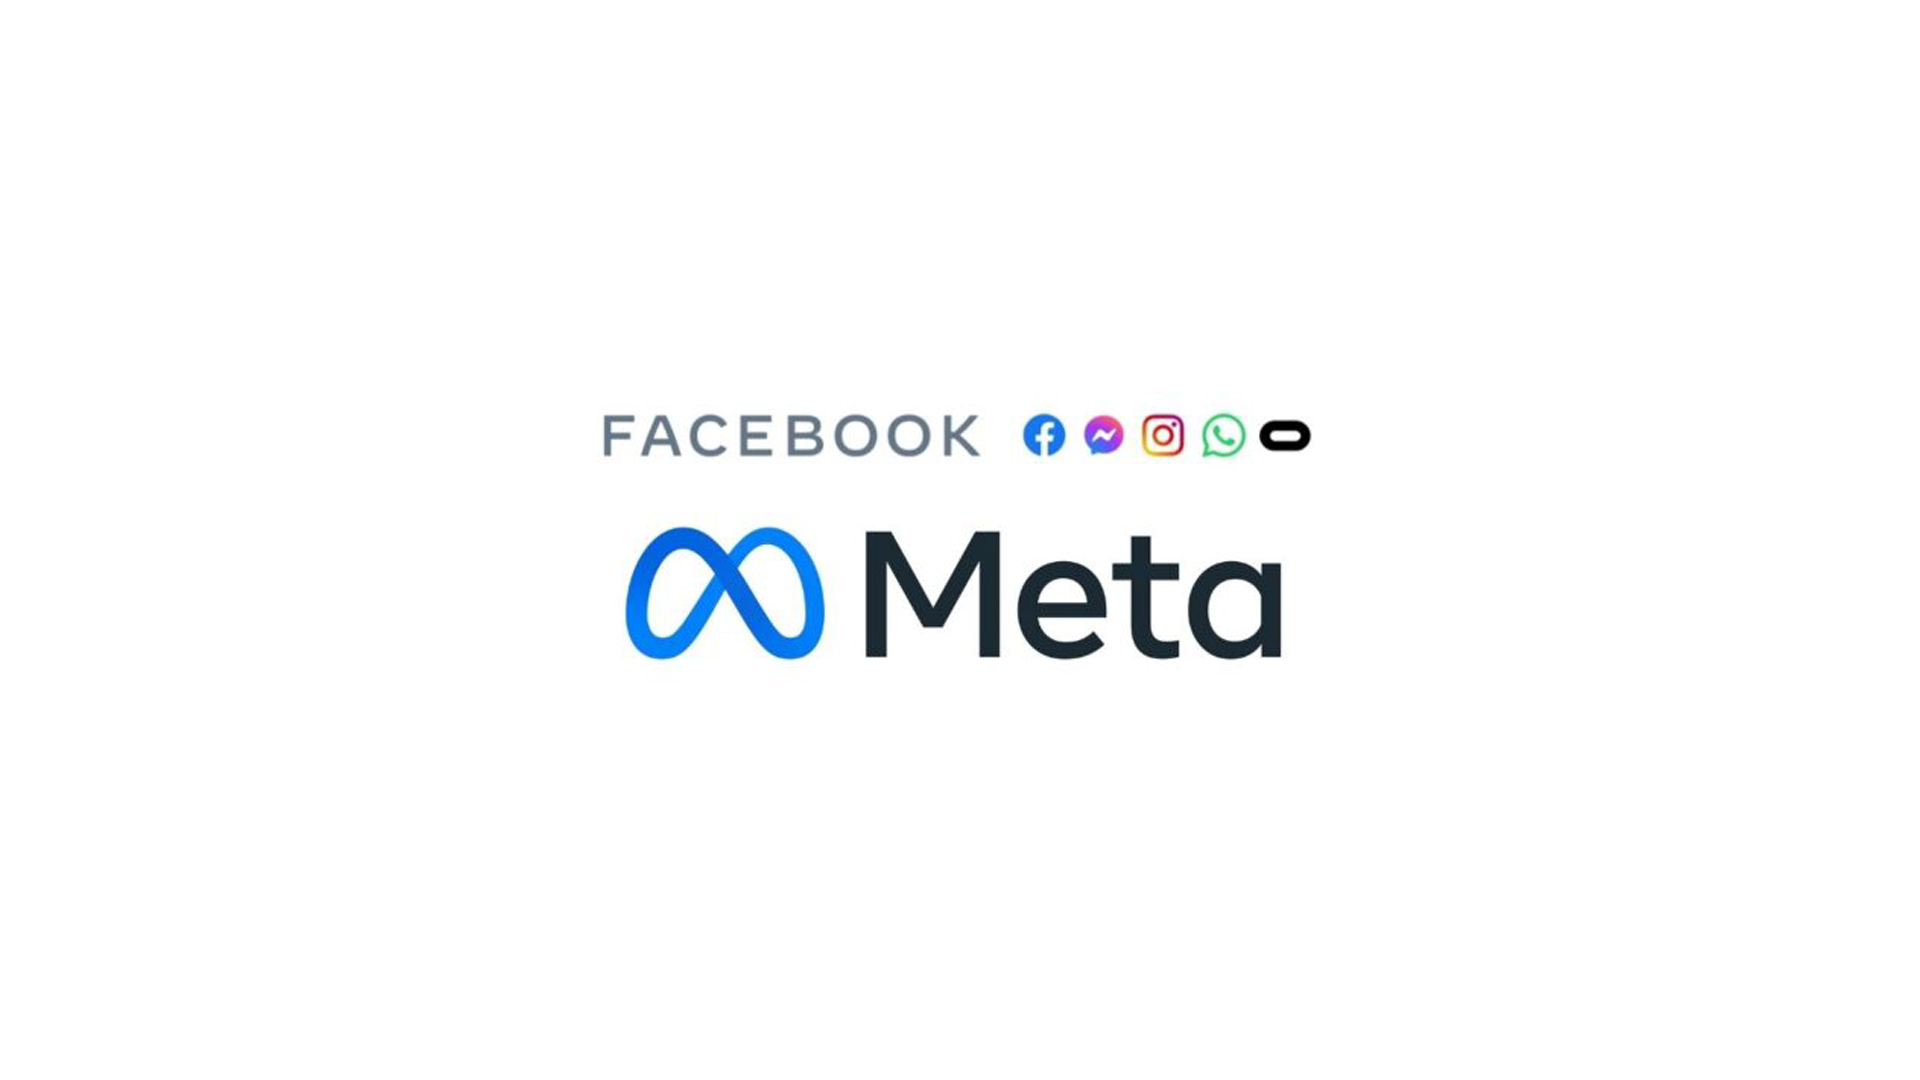 Dona do Facebook muda de nome para Meta